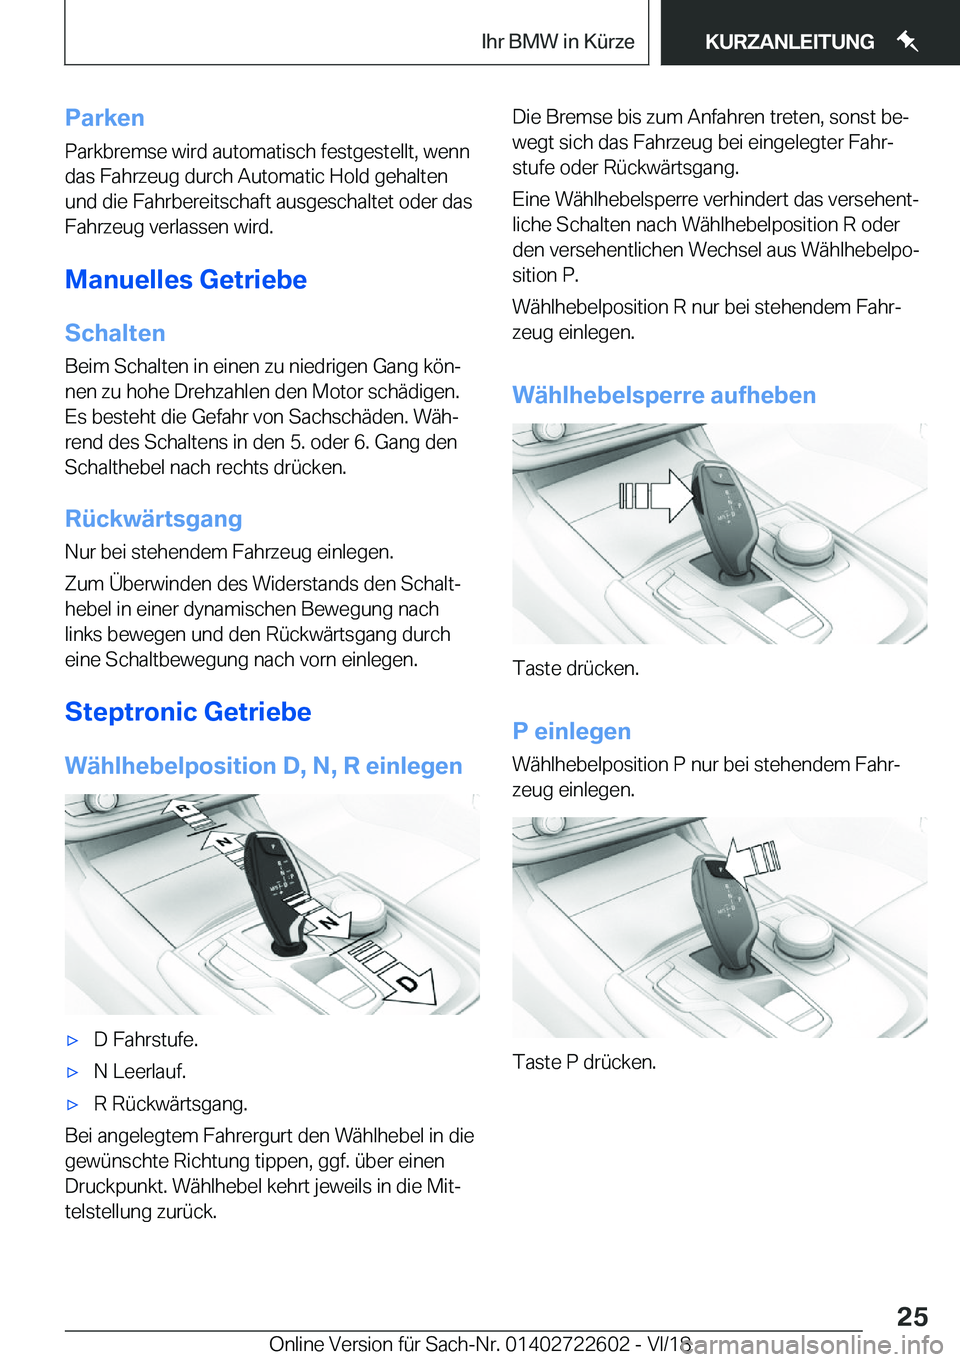 BMW 5 SERIES 2019  Betriebsanleitungen (in German) �P�a�r�k�e�n�P�a�r�k�b�r�e�m�s�e��w�i�r�d��a�u�t�o�m�a�t�i�s�c�h��f�e�s�t�g�e�s�t�e�l�l�t�,��w�e�n�n
�d�a�s��F�a�h�r�z�e�u�g��d�u�r�c�h��A�u�t�o�m�a�t�i�c��H�o�l�d��g�e�h�a�l�t�e�n �u�n�d��d